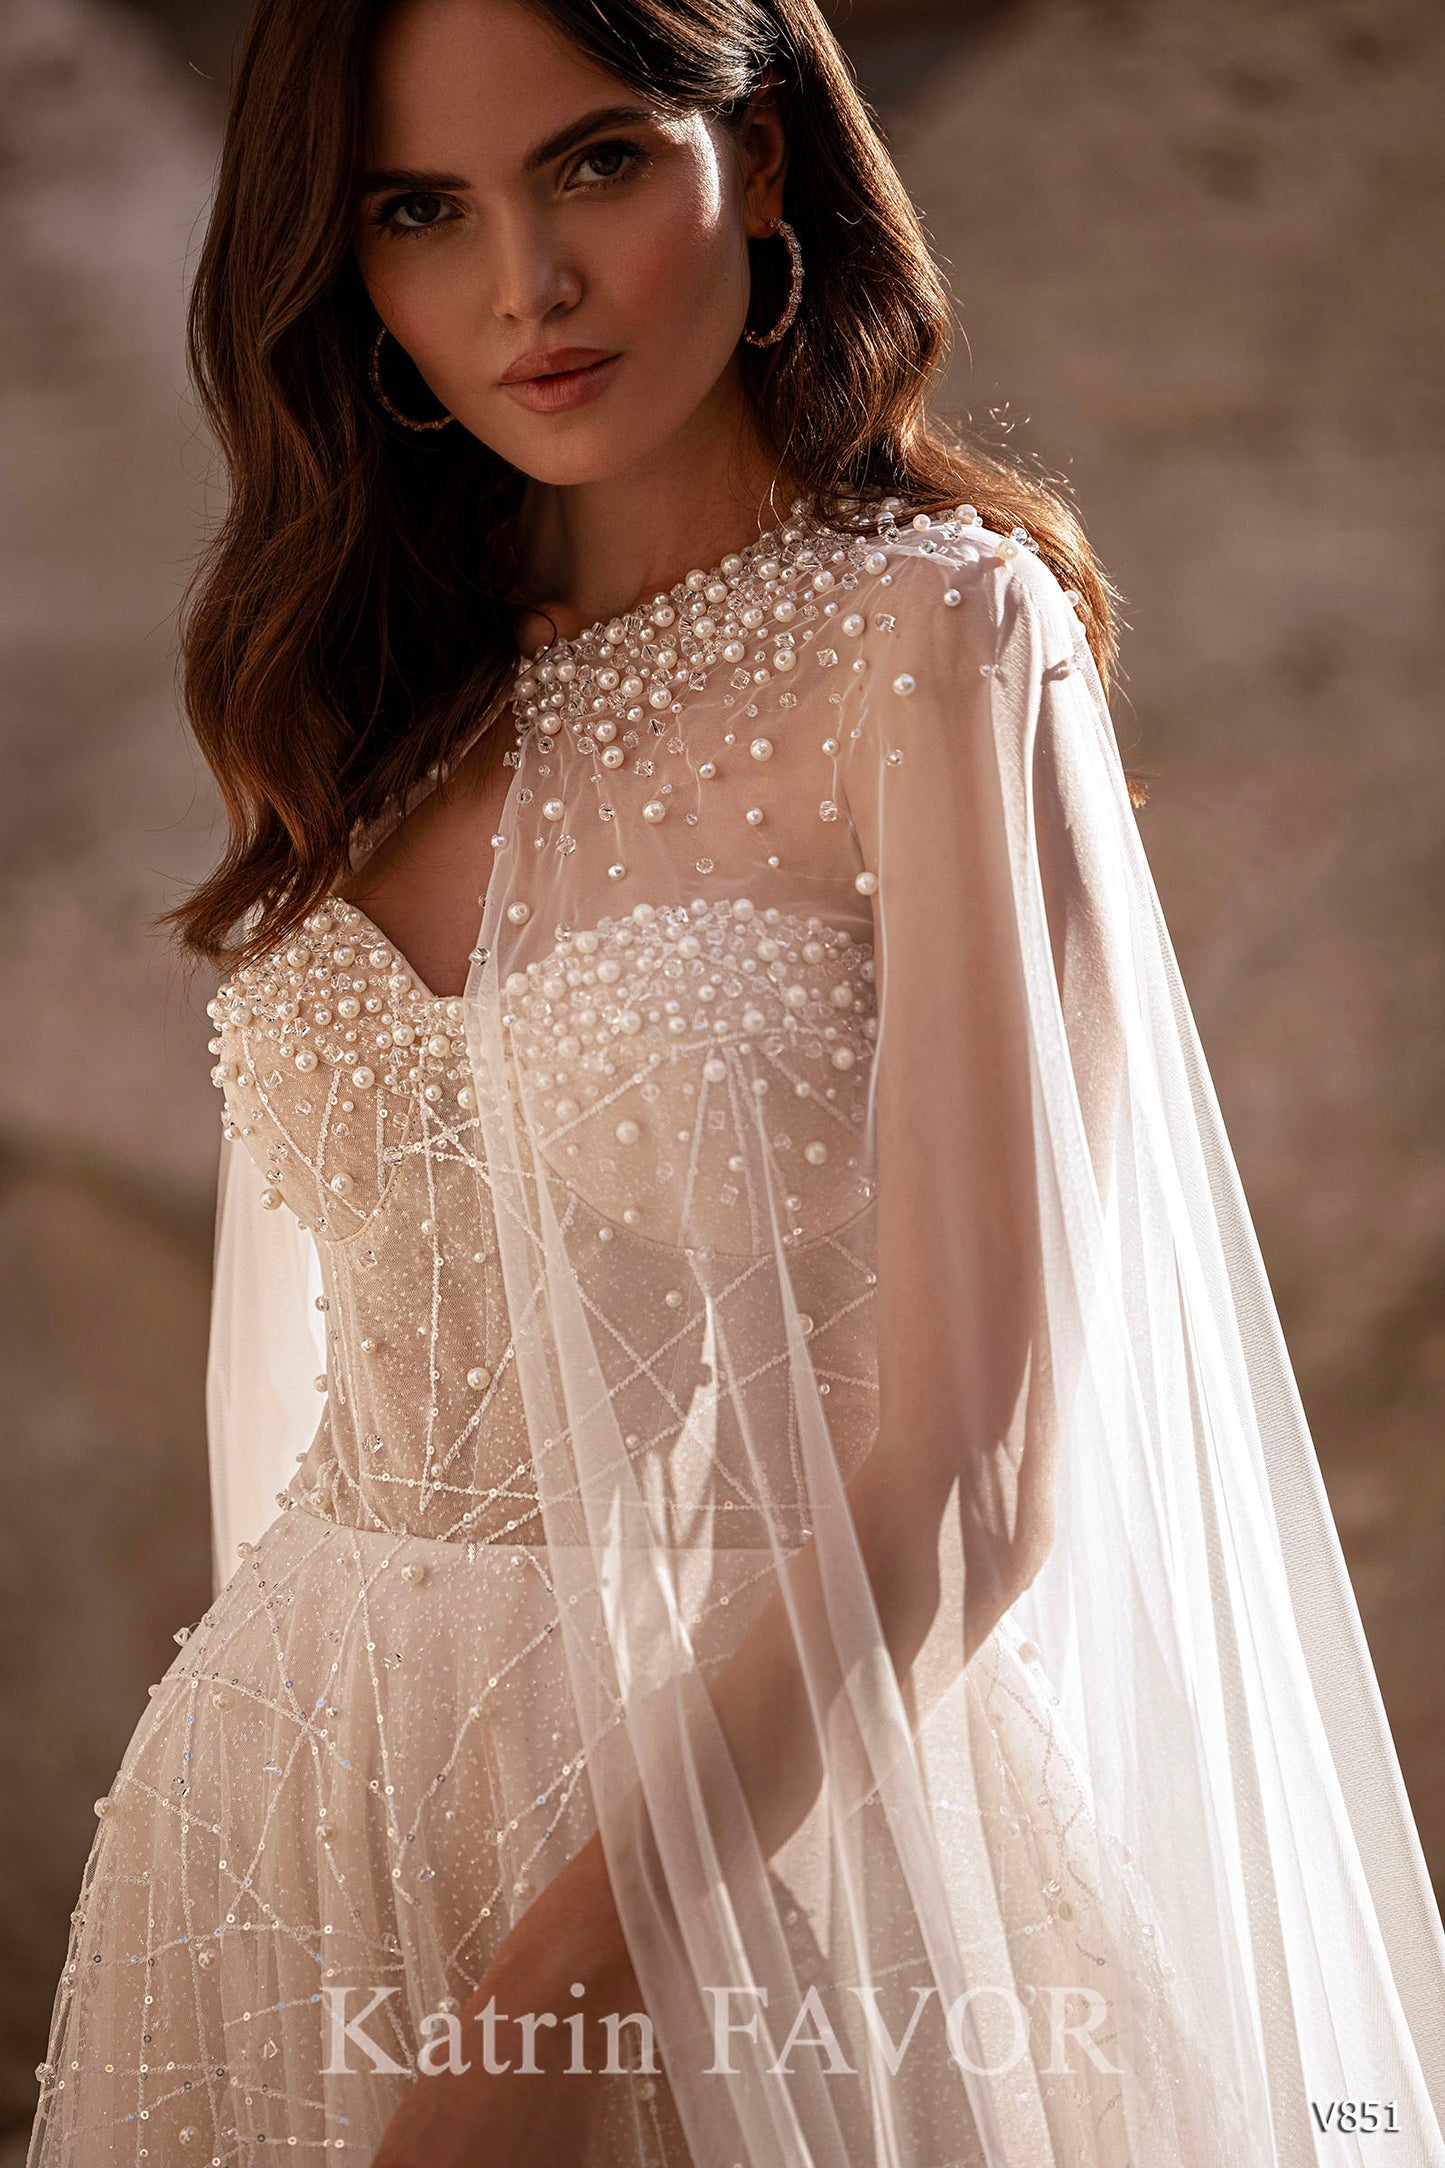 KatrinFAVORboutique-Tulle cape blush wedding dress